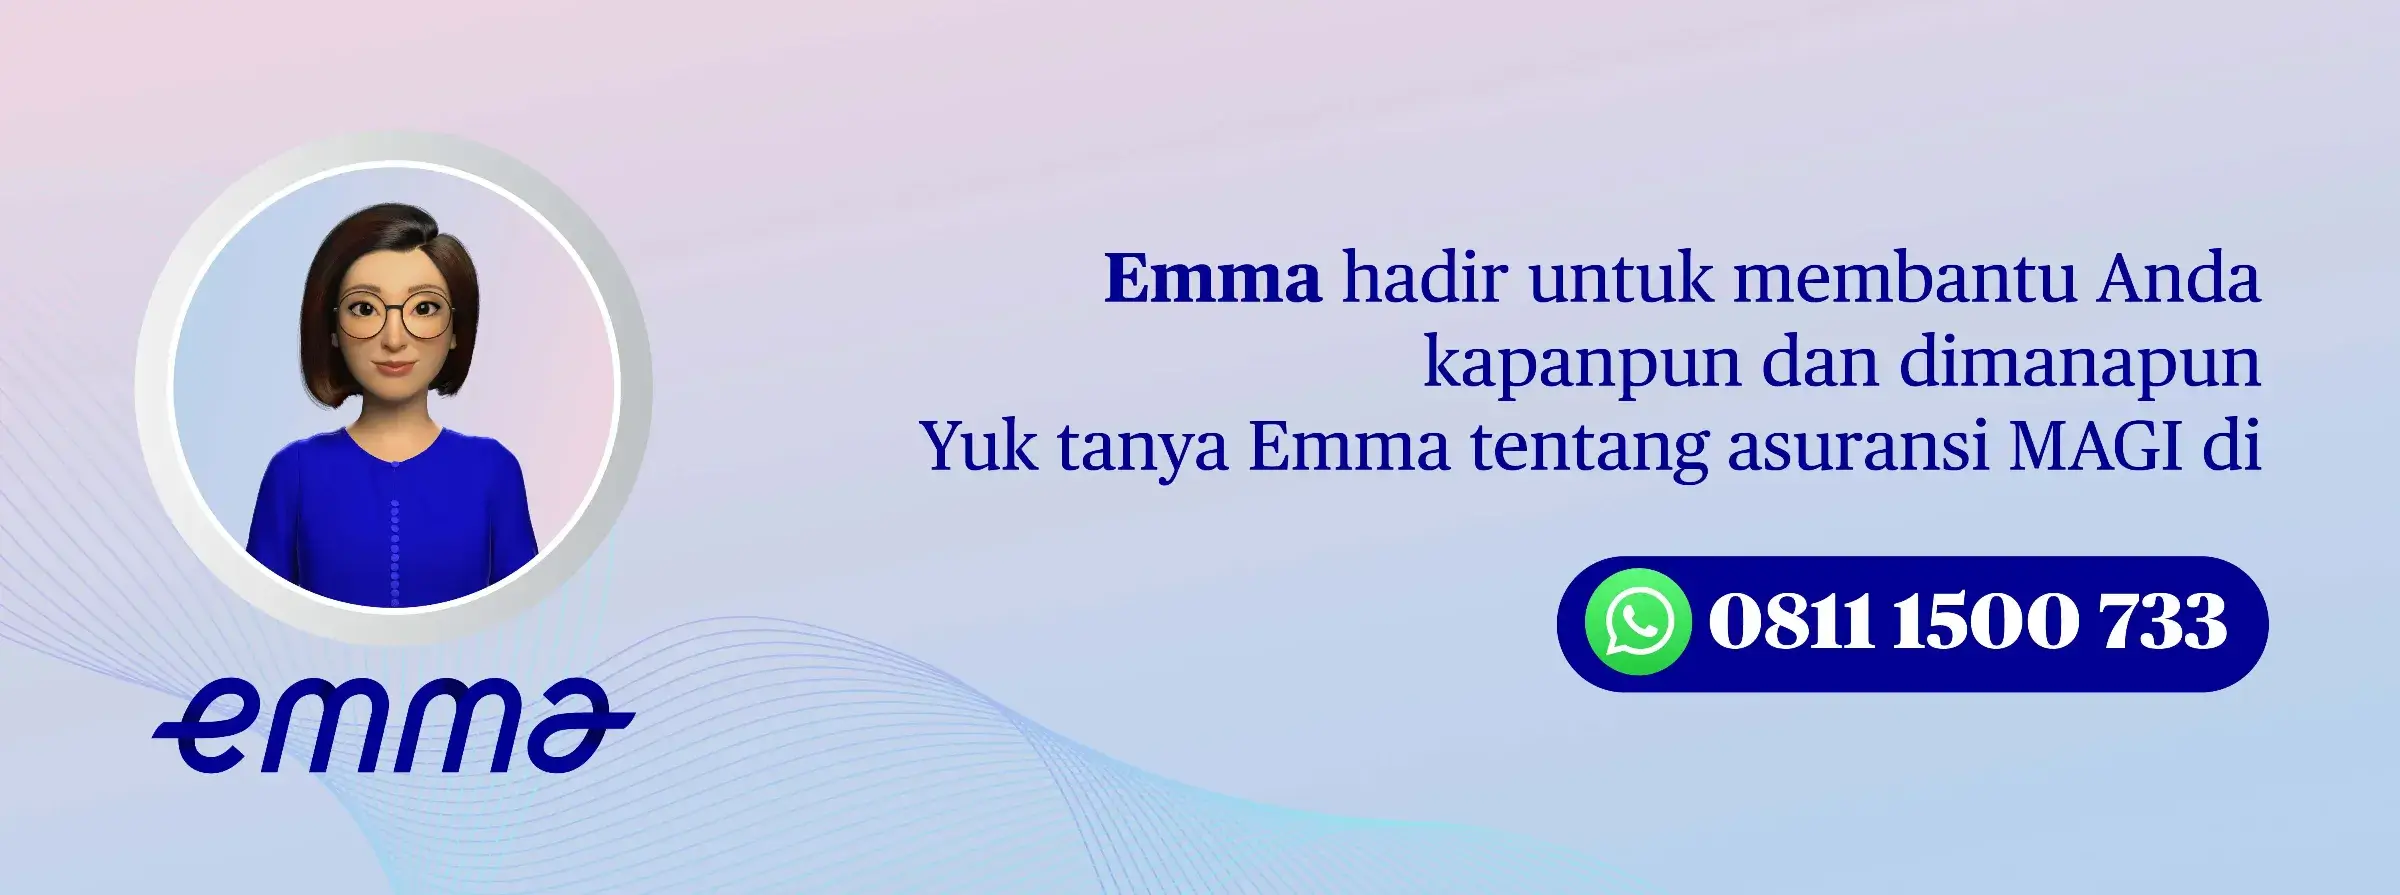 Emma hadir untuk membantu Anda kapanpun dan dimanapun